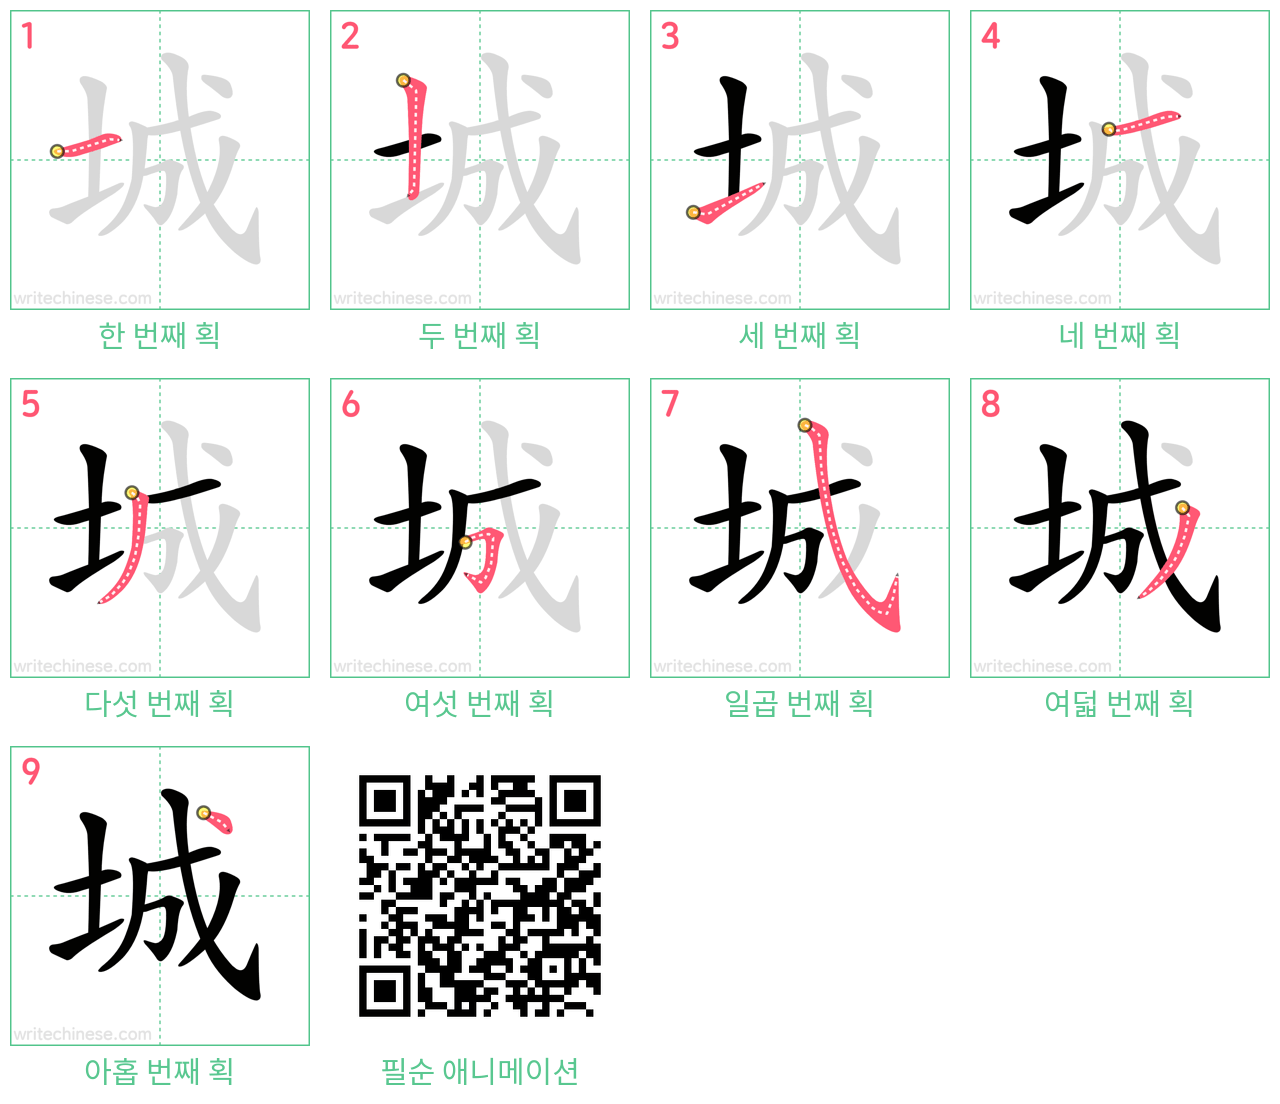 城 step-by-step stroke order diagrams